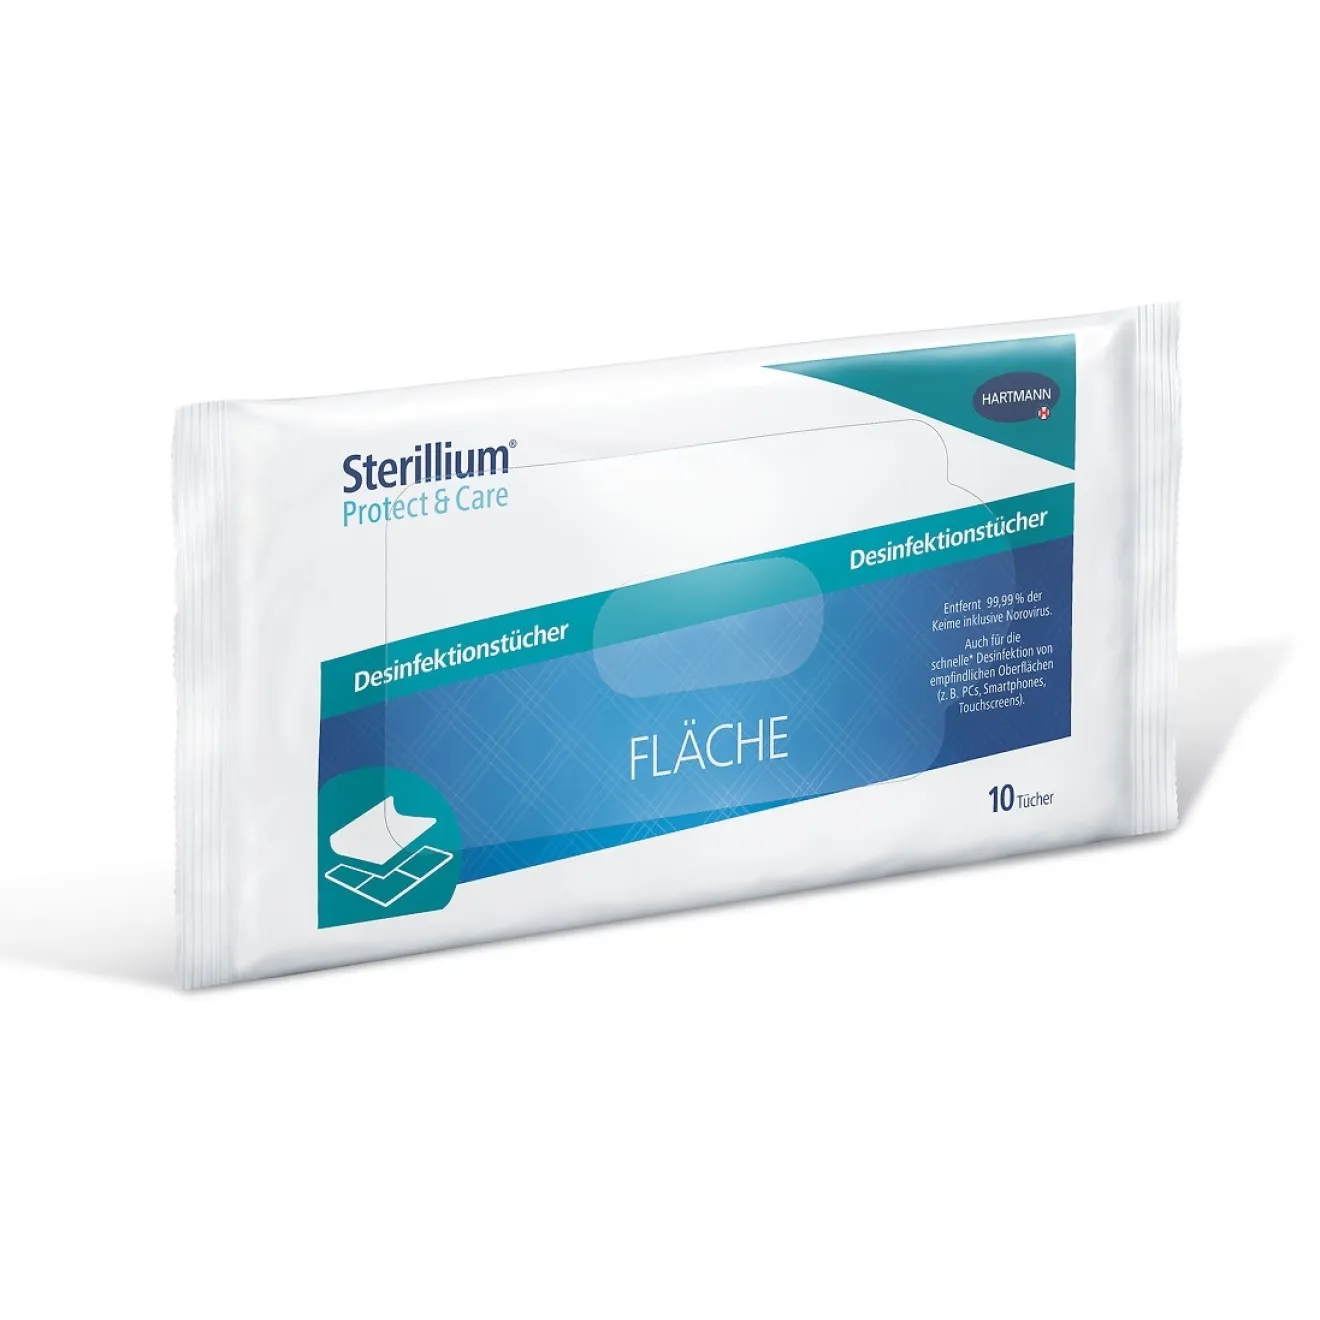 STERILLIUM Protect & Care Fläche Desinfektionstücher 10 ST